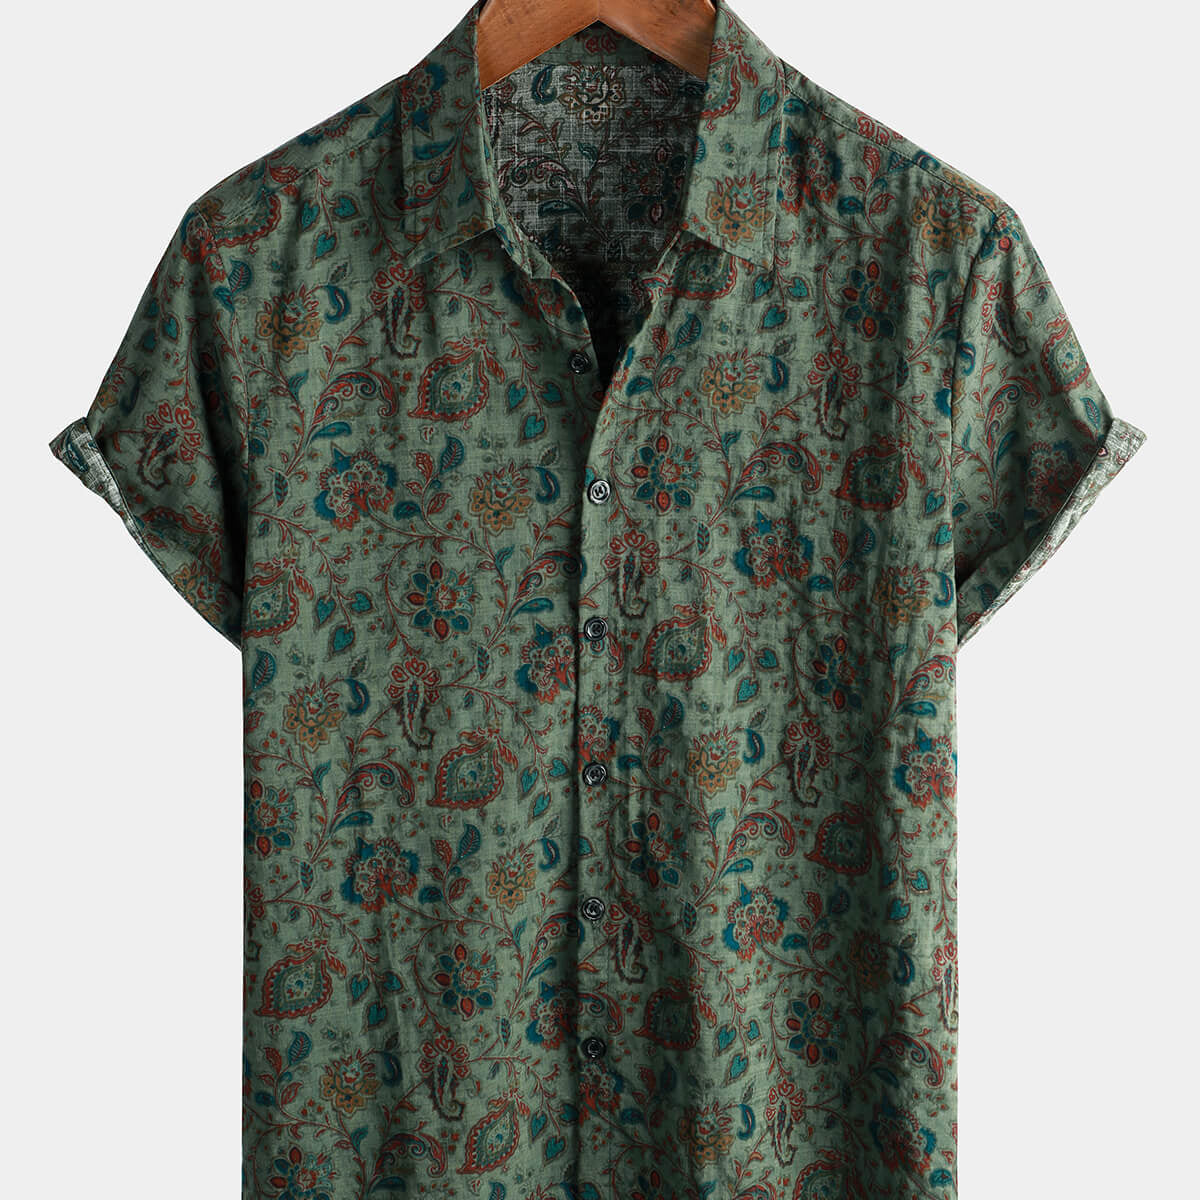 Camisa de manga corta vintage con botones para hombre, estilo retro, paisley, años 70, color verde